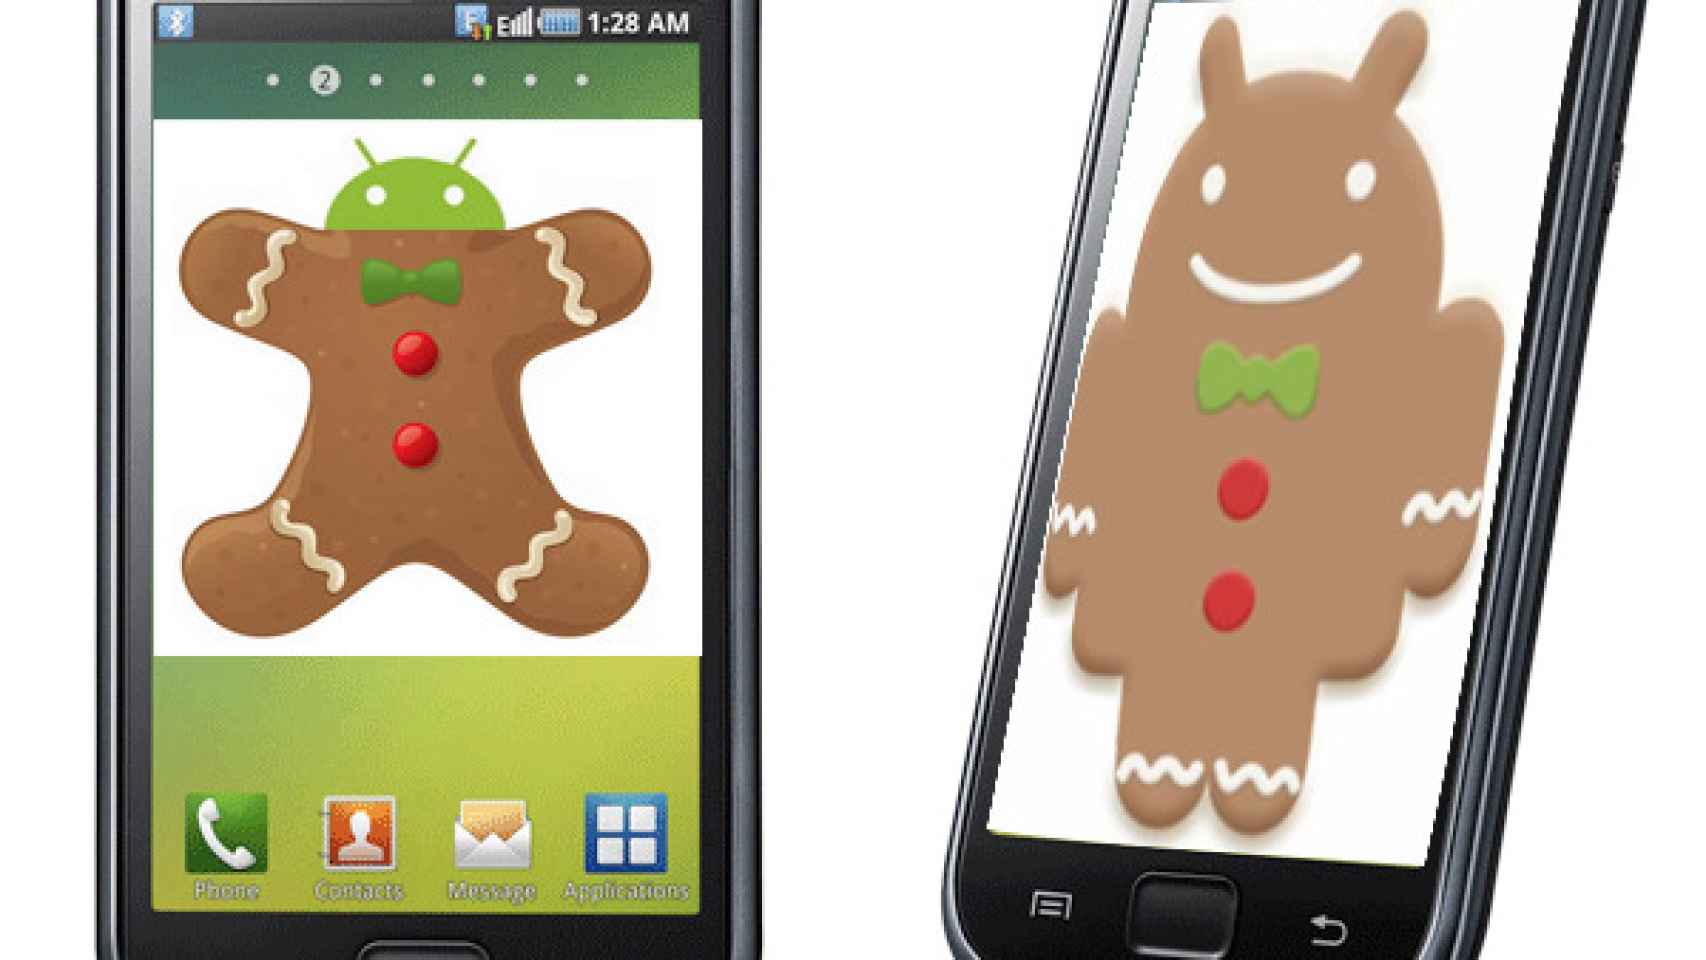 Filtrada ROM Gingerbread (Android 2.3.2) para Samsung Galaxy S